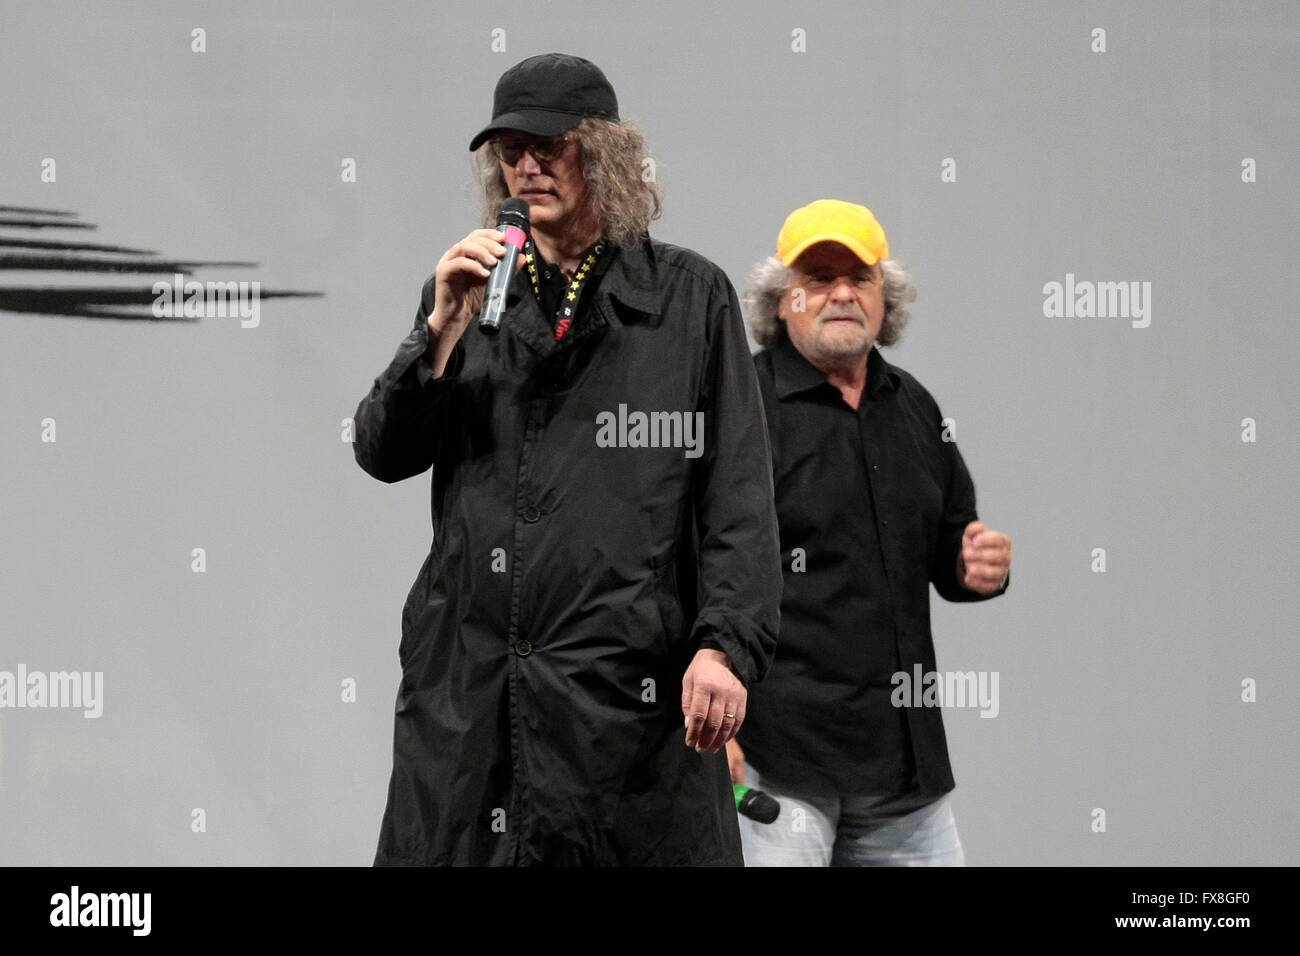 Beppe Grillo e Gianroberto Casaleggio Roma 23 de 2014 Cierre de la campaña política de m5s, el movimiento 5 estrellas Foto de stock